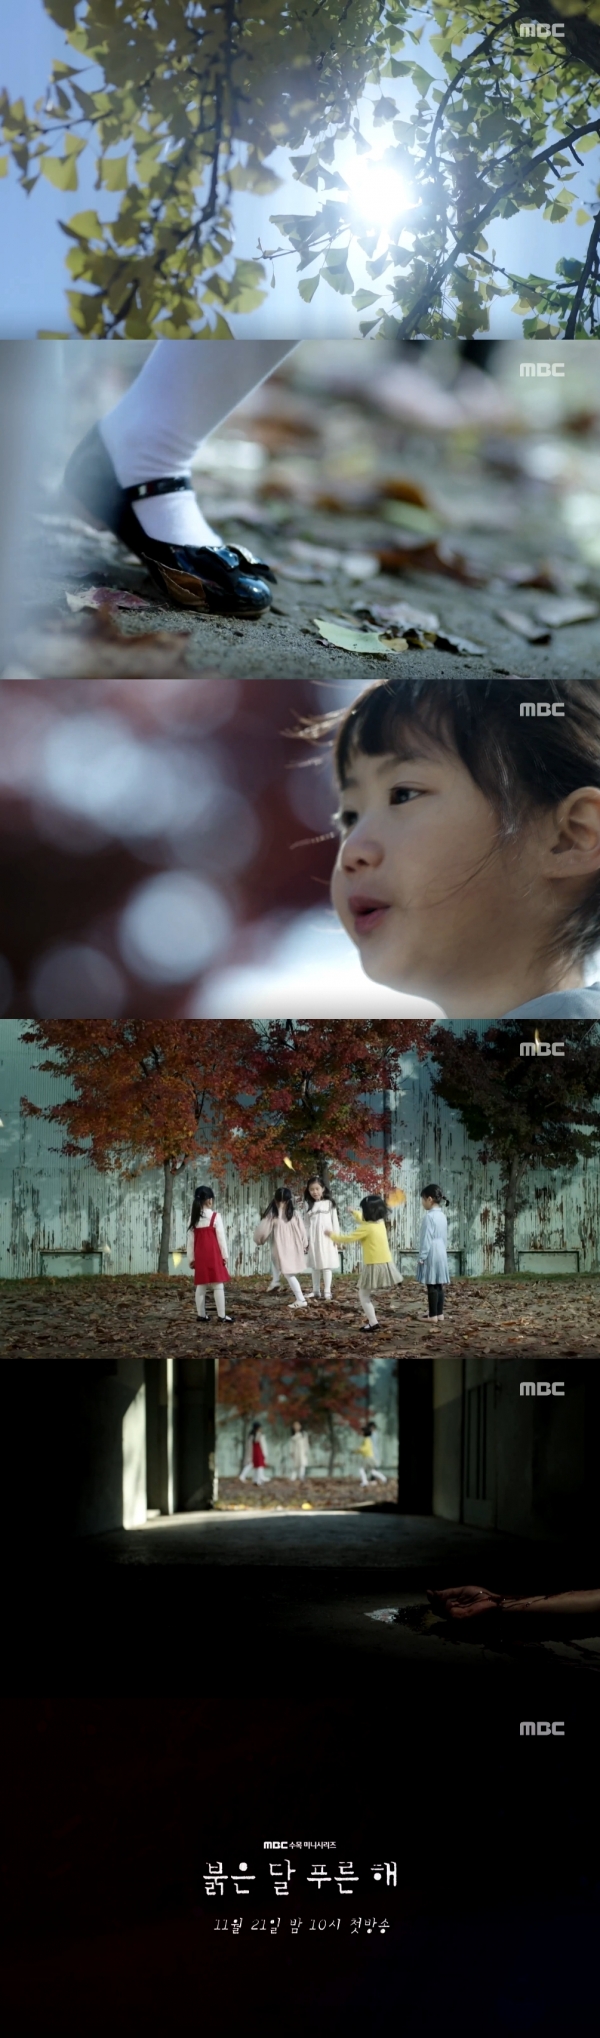 사진제공 : MBC 새 수목드라마 ‘붉은 달 푸른 해’ 1차티저 캡처